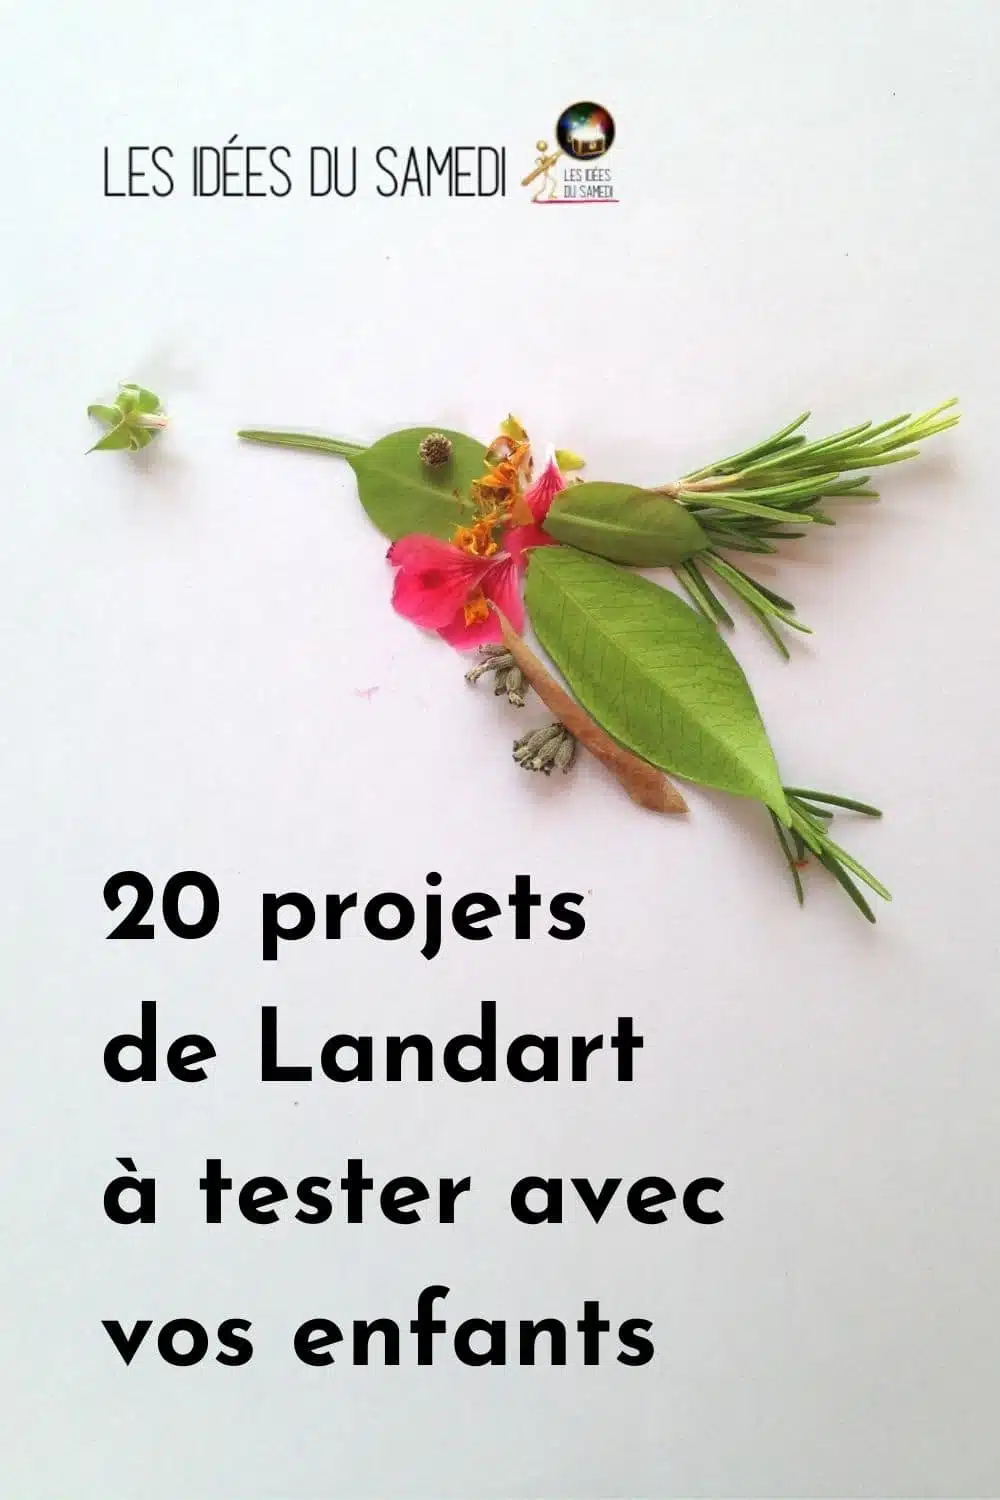 colibri en feuilles et fleurs comme exemple de projet landart fait avec les enfants